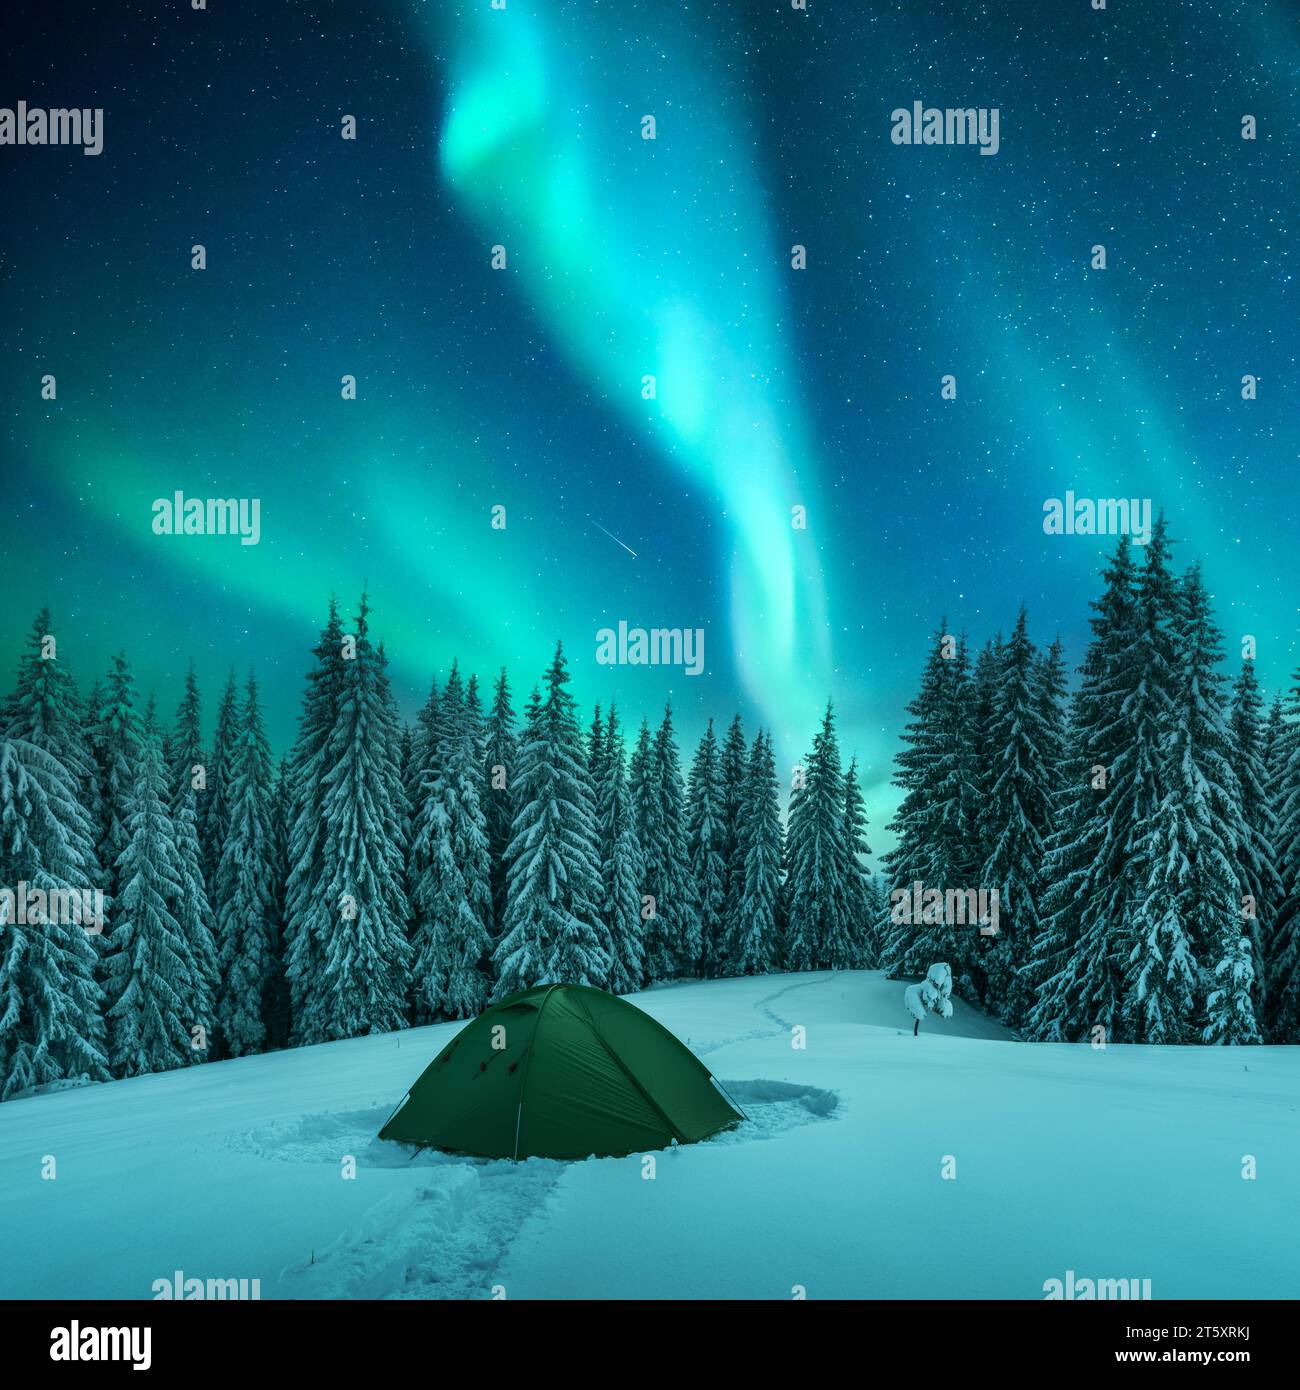 Tienda verde y abetos cubiertos de nieve en un claro de invierno en medio de las montañas con el telón de fondo de un increíble cielo estrellado con aurora boreal. Auroras boreales en el cielo nocturno Foto de stock